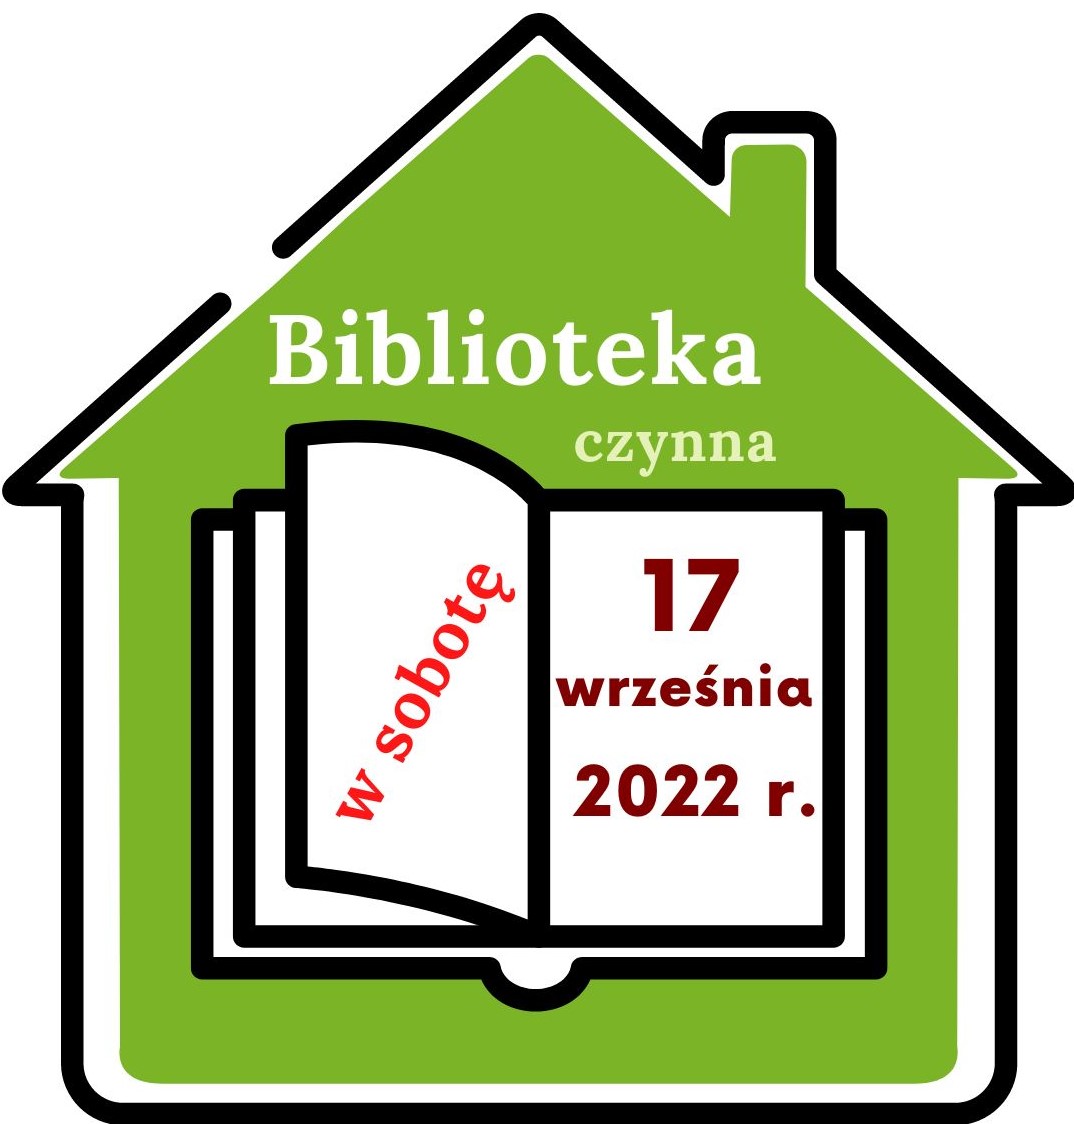 zdjęcie informujące o otwarciu biblioteki w sobotę 17 września 2022 r.